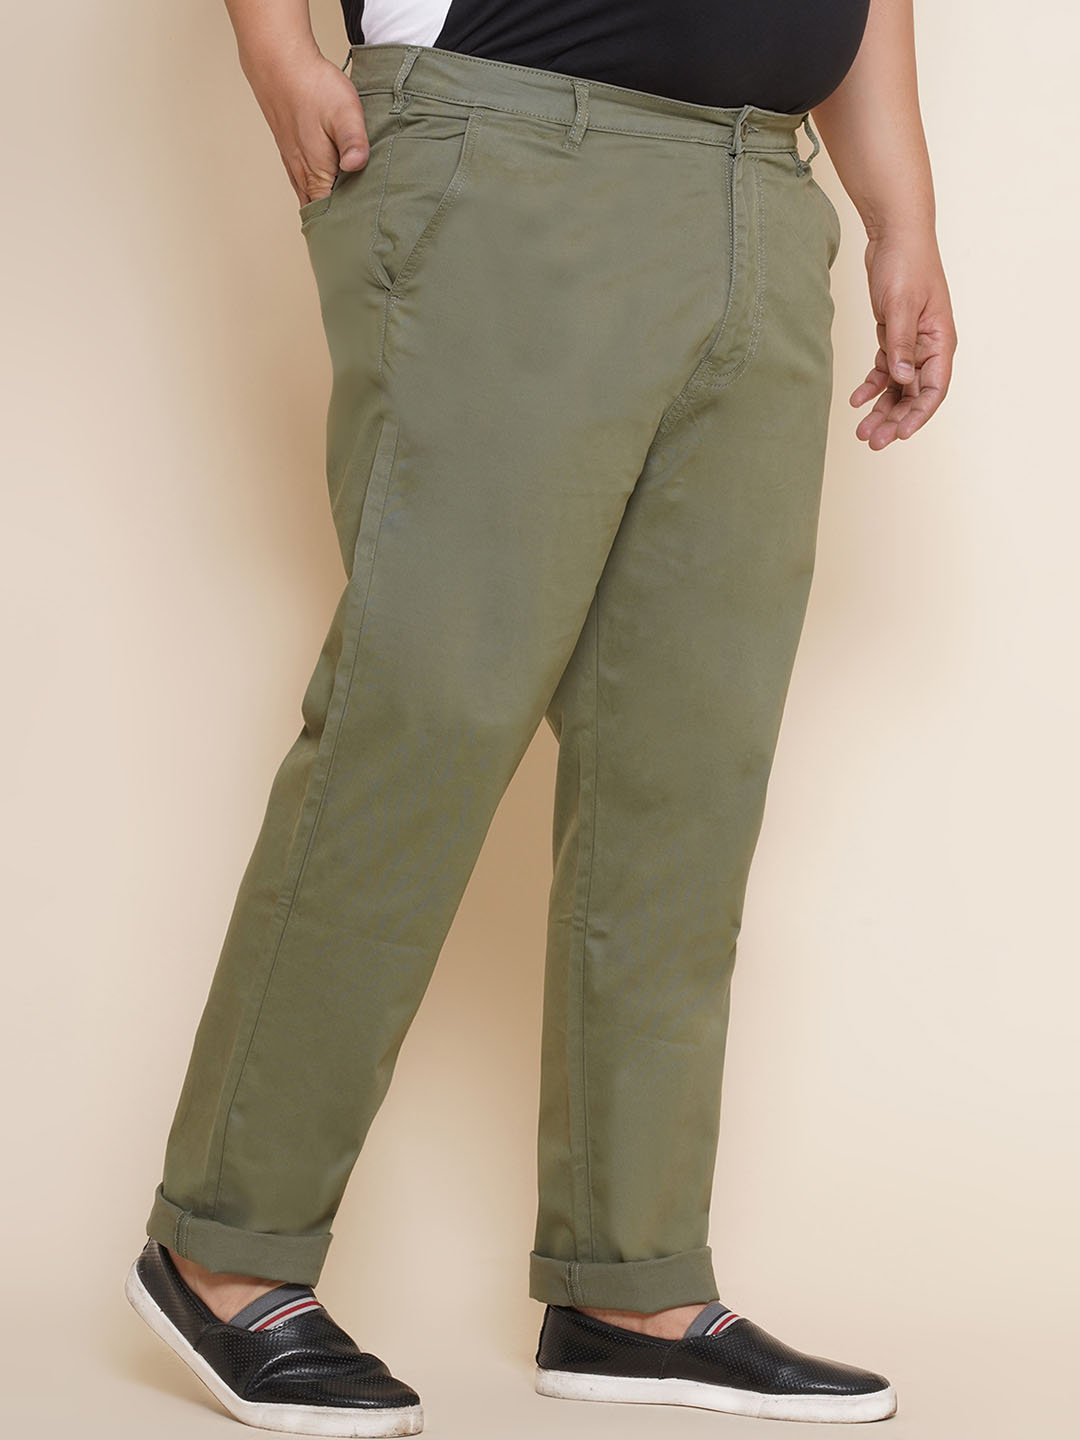 bottomwear/trousers/JPTR21011/jptr21011-4.jpg